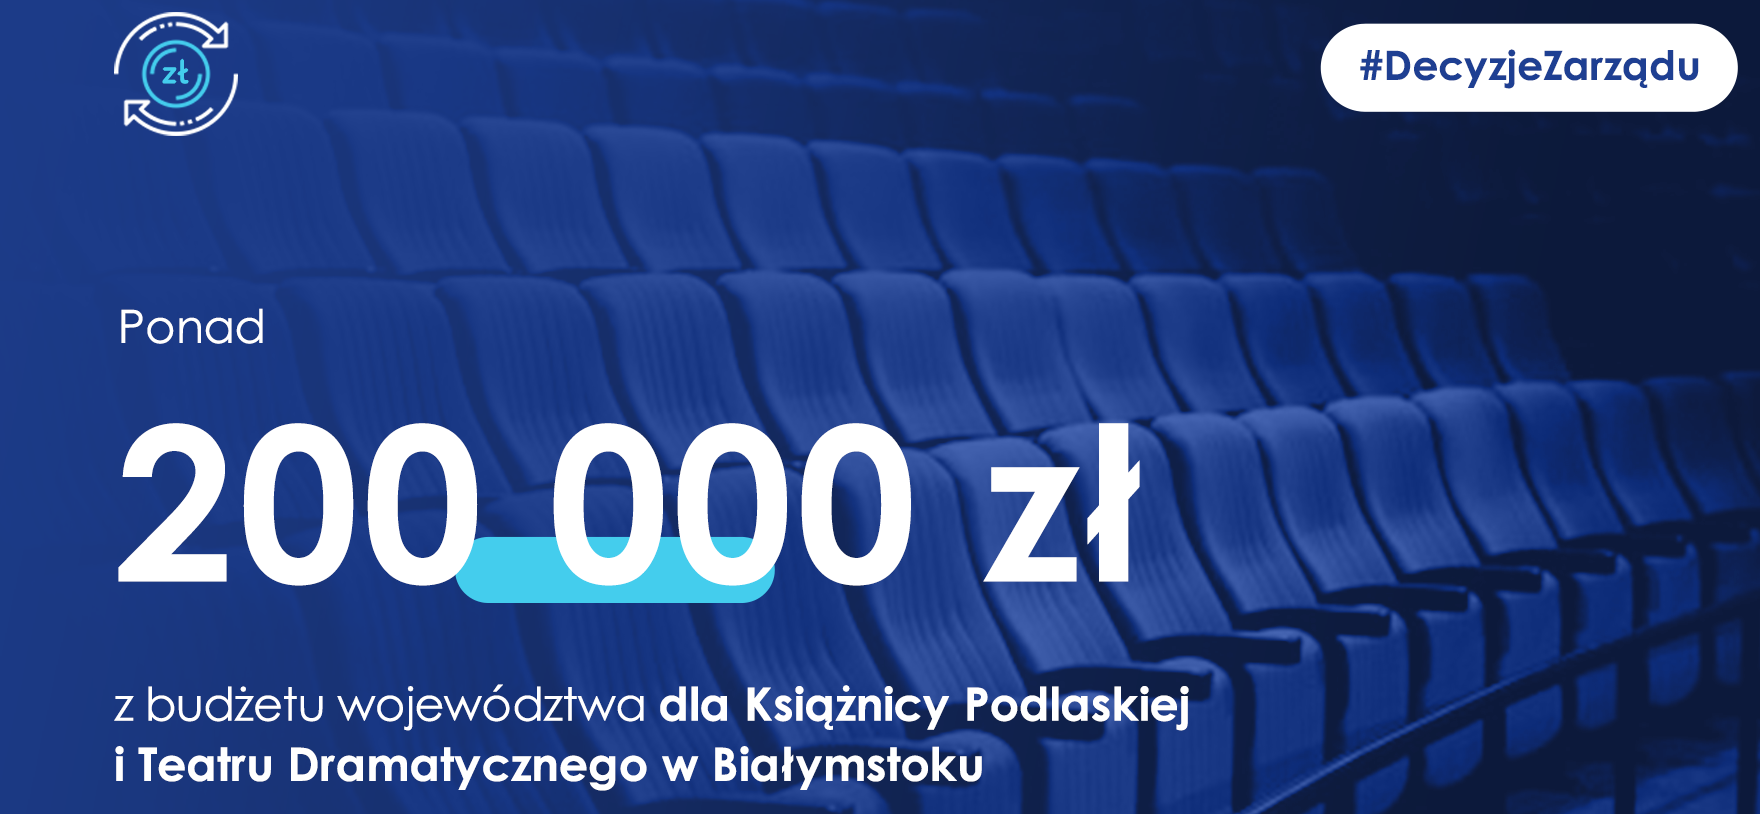 Ponad 200 tys. zł dla Książnicy Podlaskiej i Teatru Dramatycznego z budżetu województwa